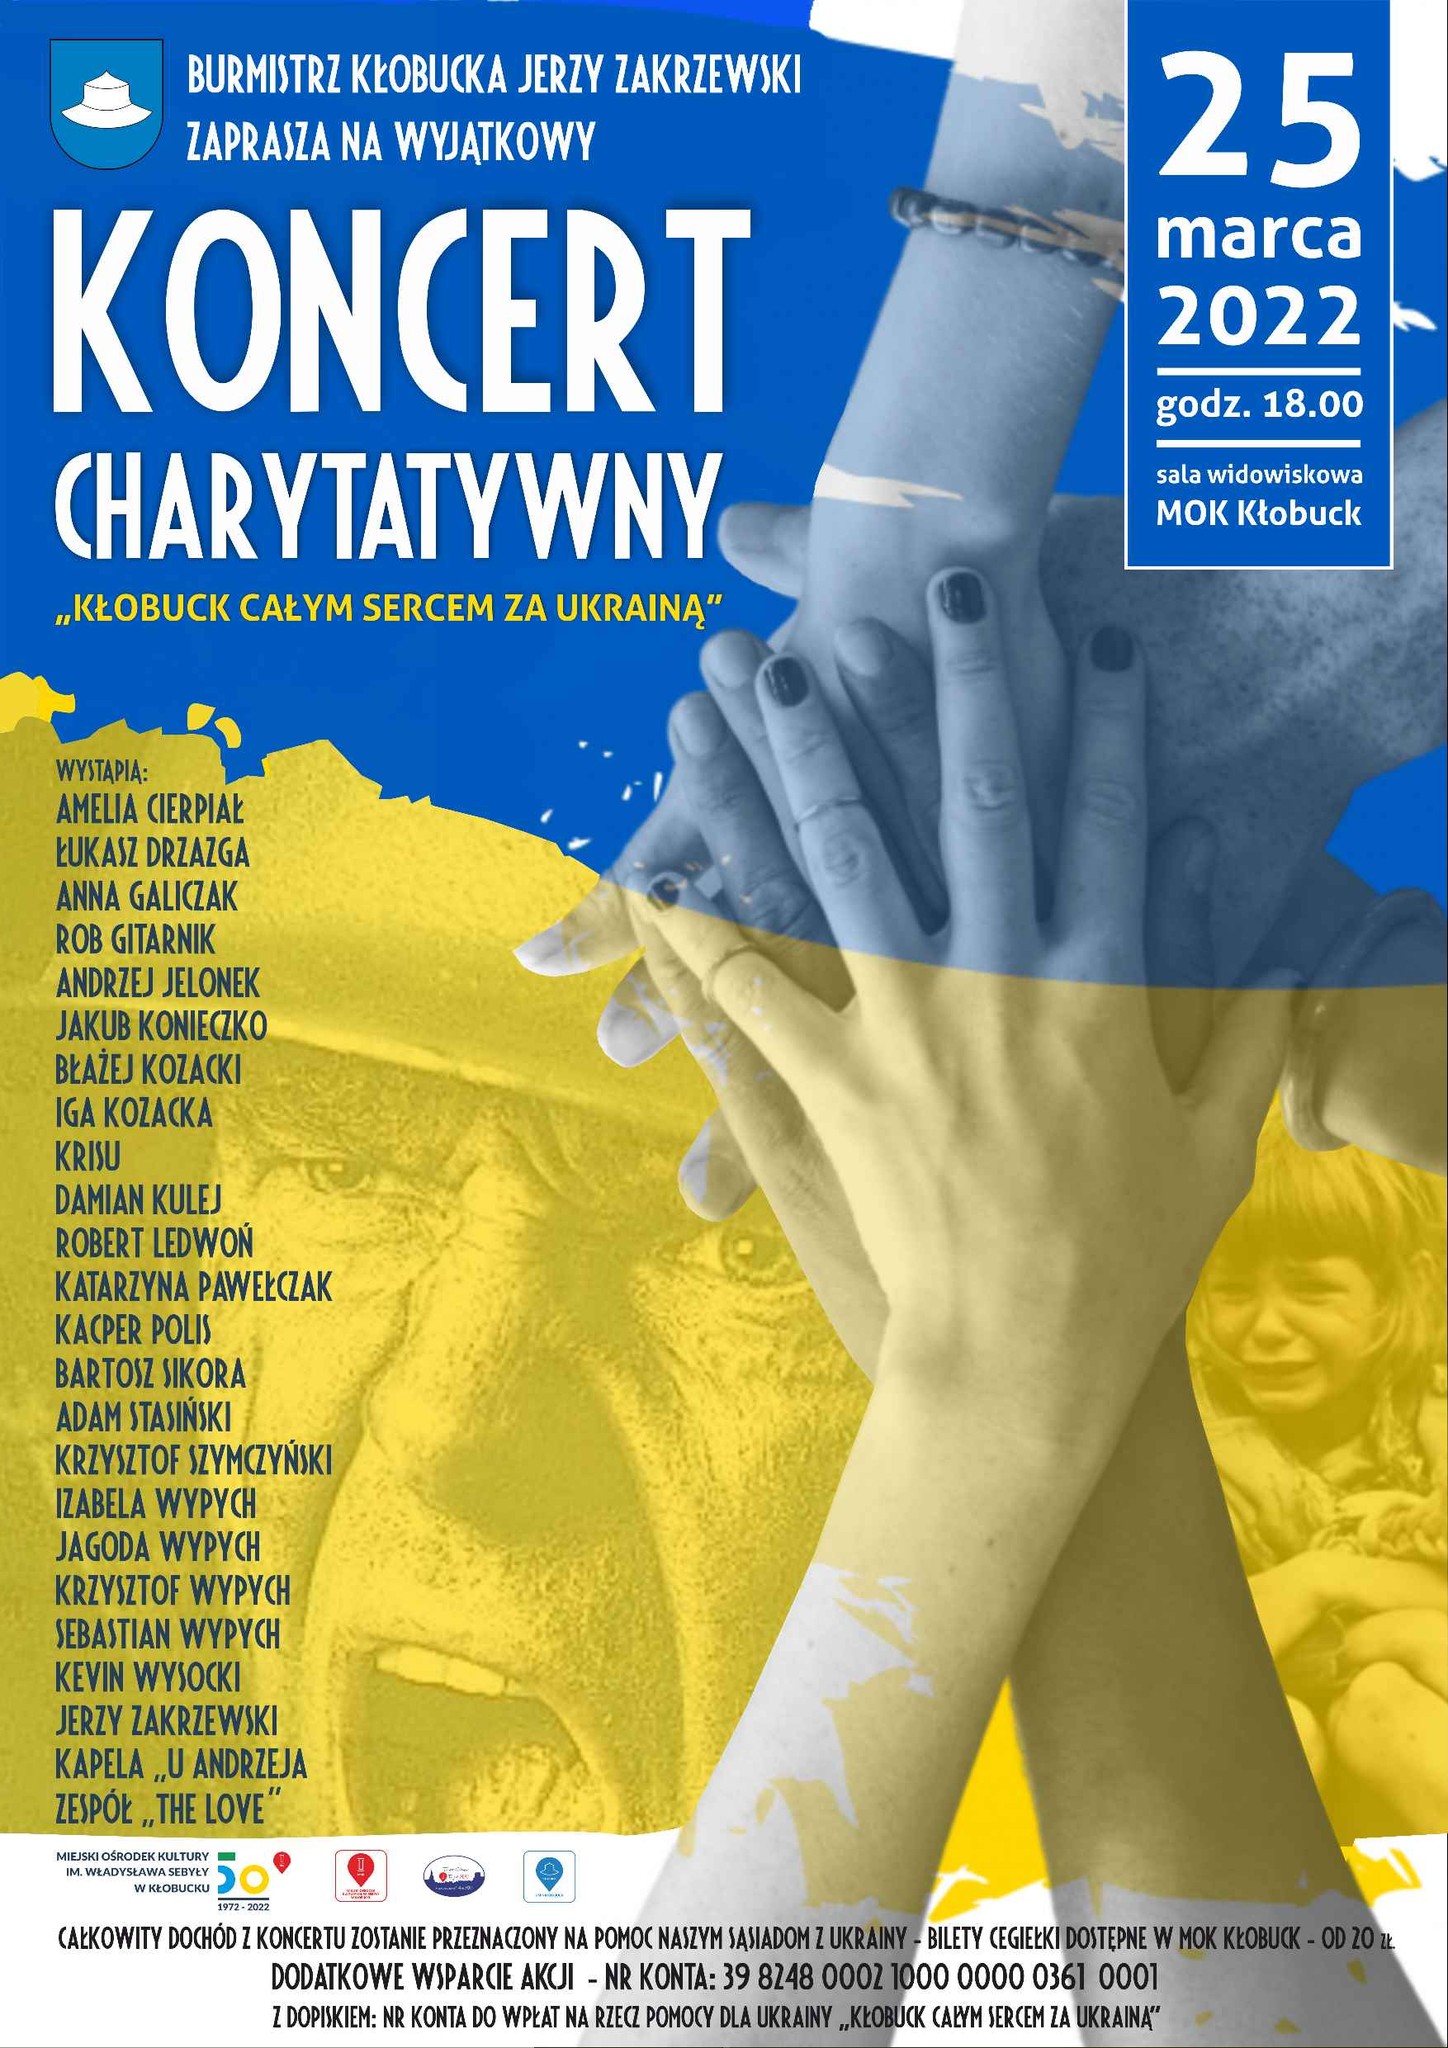 Kłobuck całym sercem z Ukrainą. Wyjątkowy koncert już 25 marca o godz. 18:00 5